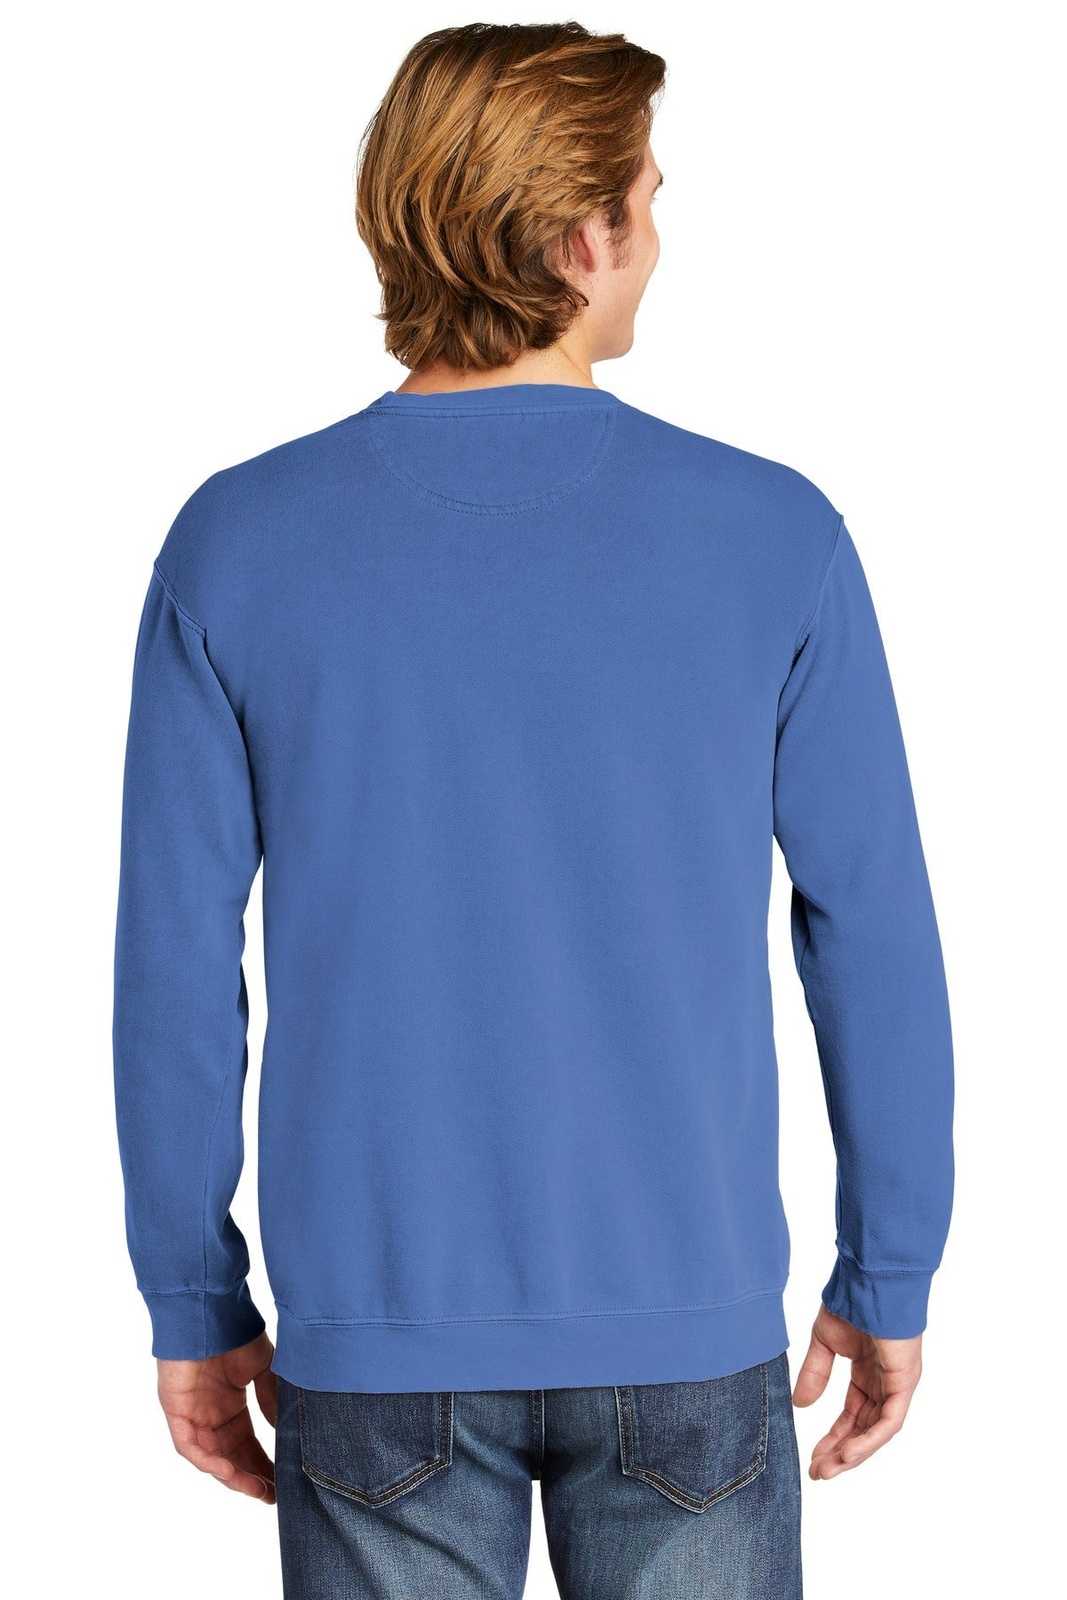 Comfort Colors 1566 Ring Spun Crewneck Sweatshirt - Flo Blue - HIT a Double